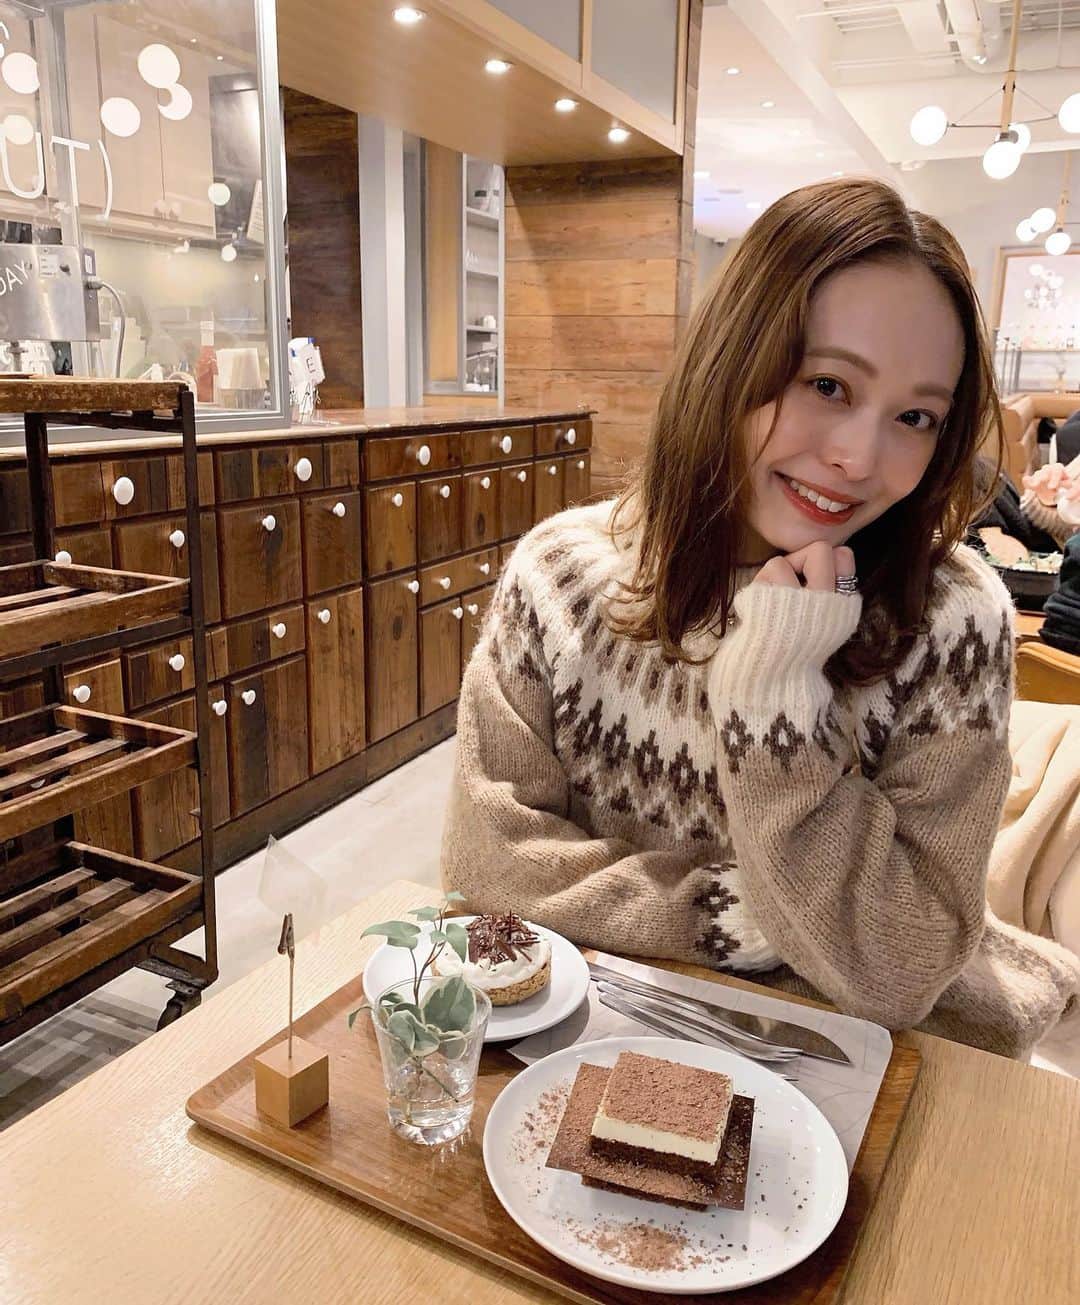 榊本麻衣さんのインスタグラム写真 榊本麻衣instagram カフェ行きたいなぁ 甘いものが食べたい Cafe カフェ カフェ巡り 東京カフェ カフェ巡り好きな人と繋がりたい おしゃれカフェ 美味しい Mai Food 笑顔 Smile 東京